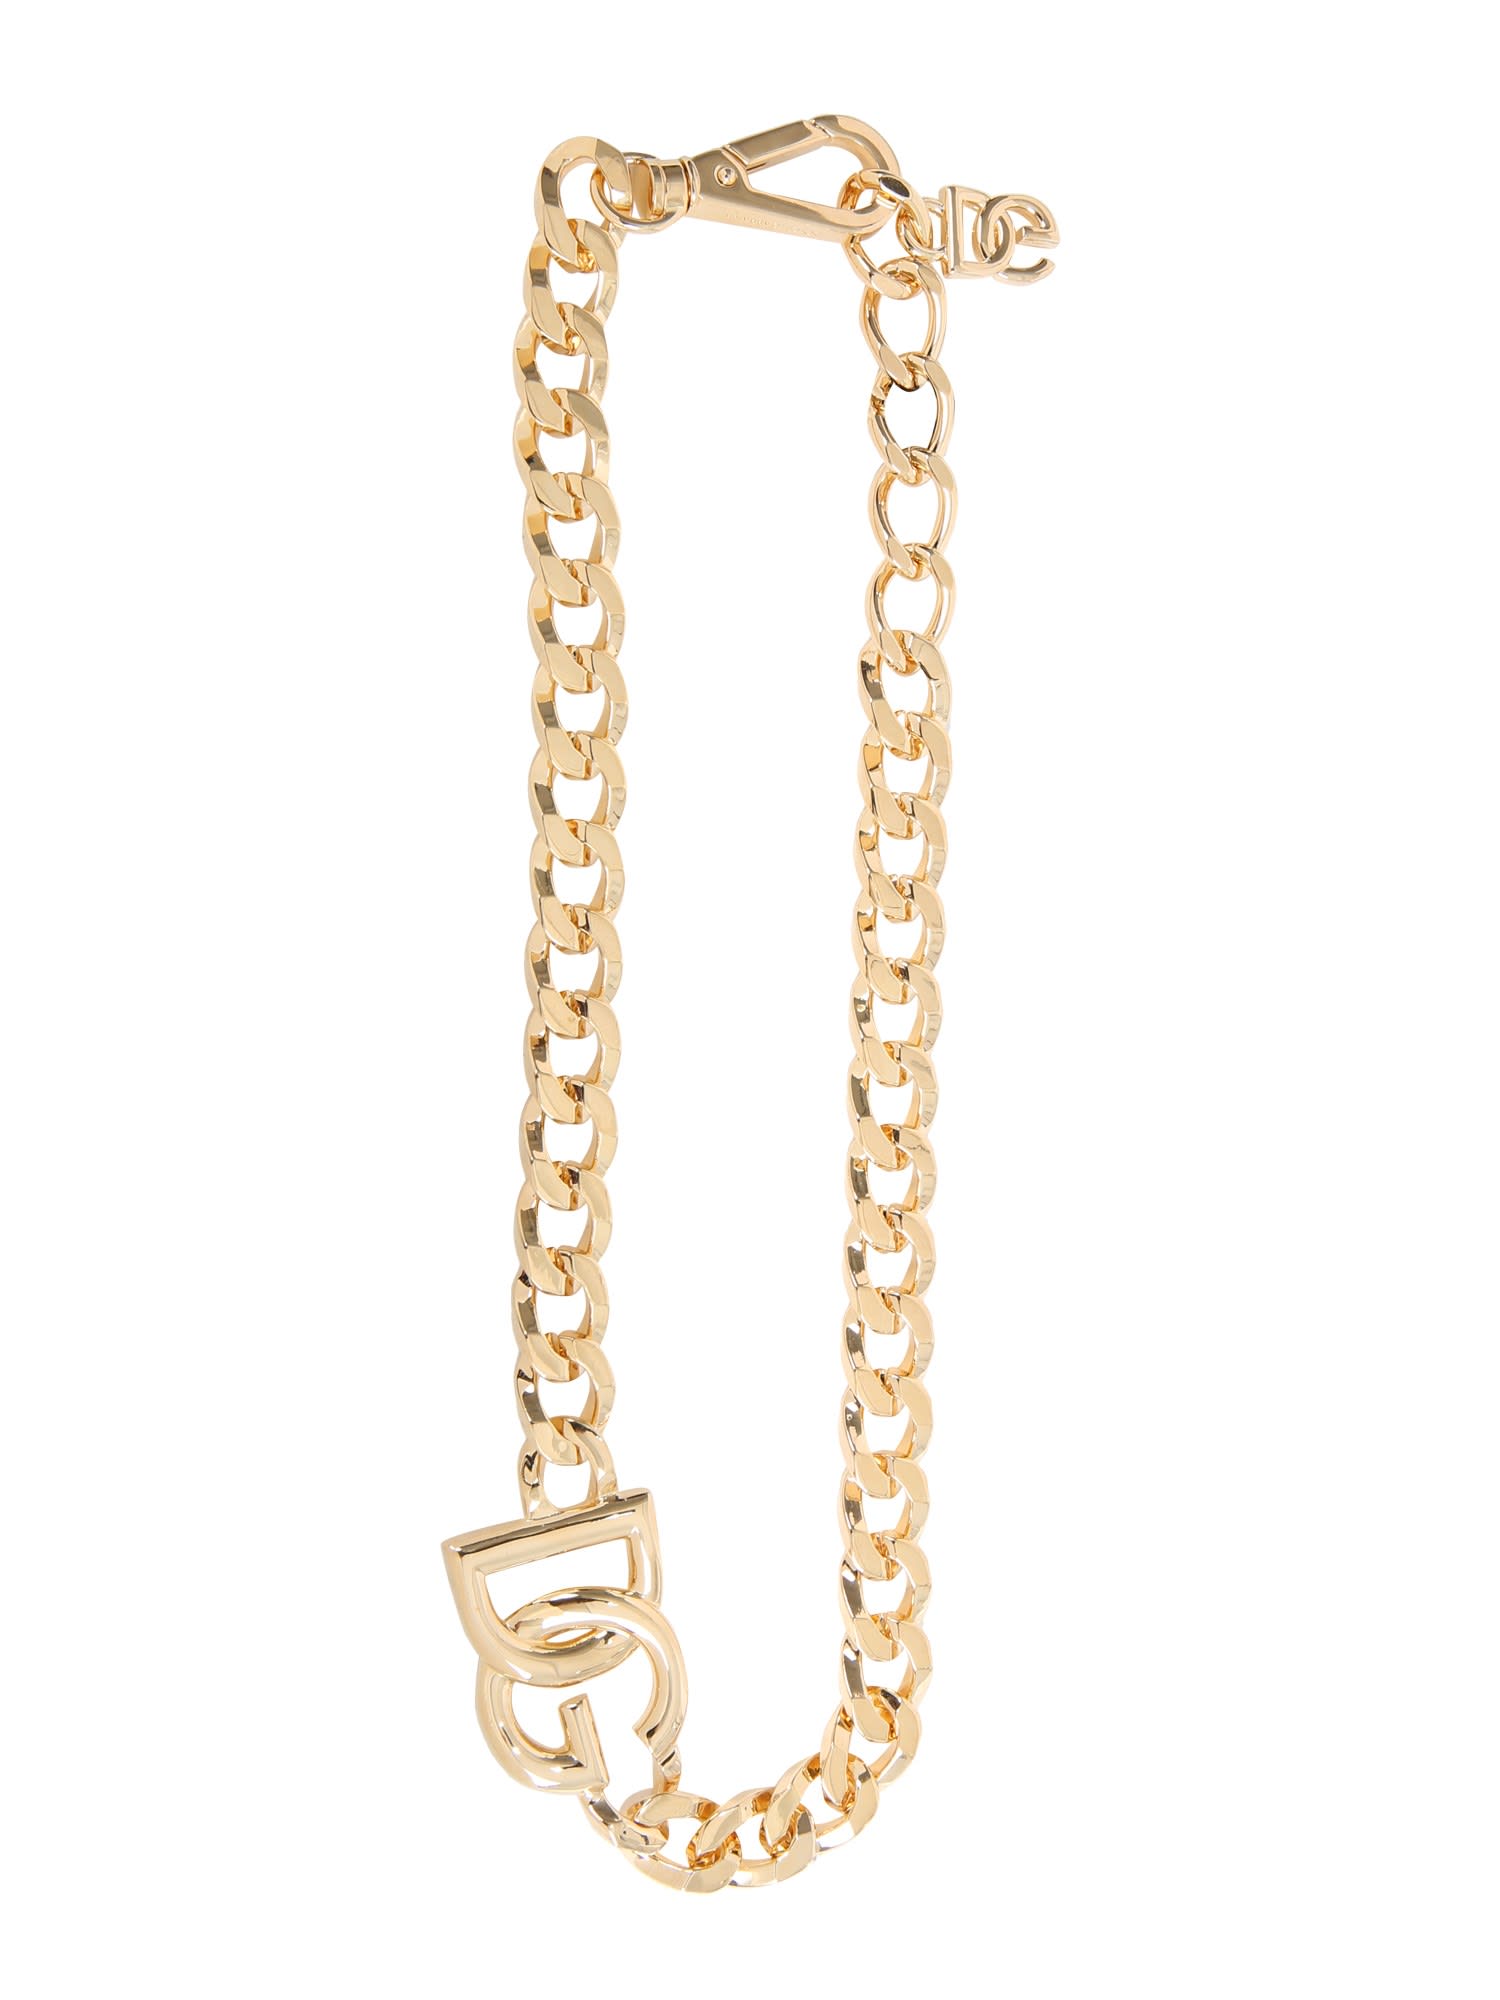 Dolce & Gabbana Dg Chain Necklace